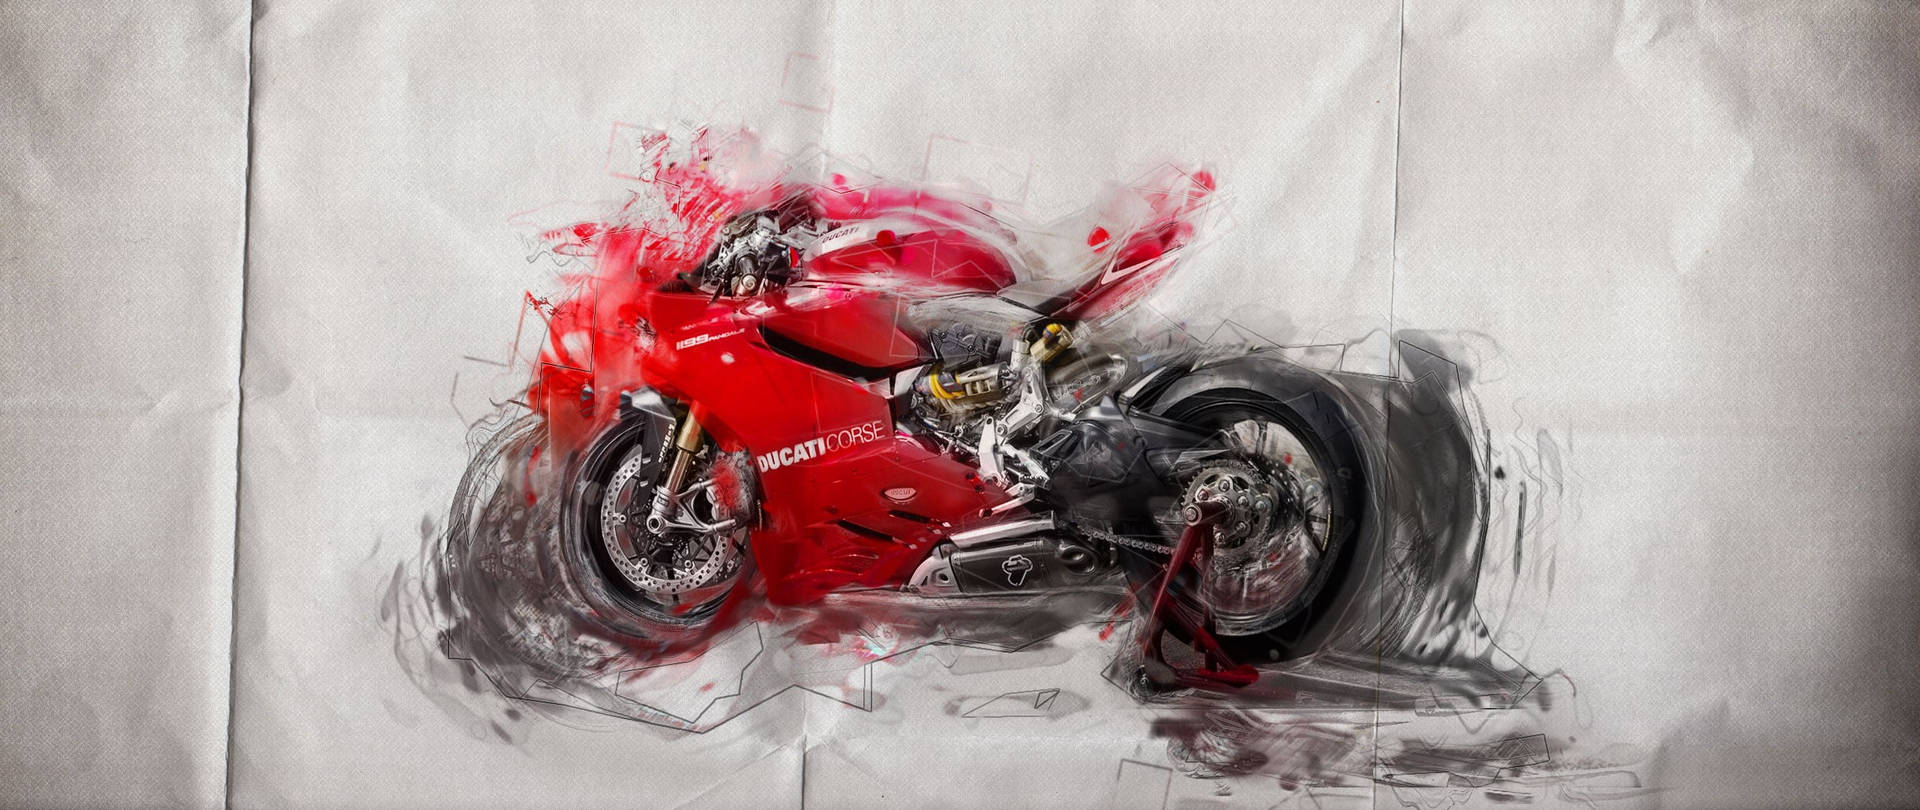 Ducaticorse Rote Motorrad-illustration Wallpaper